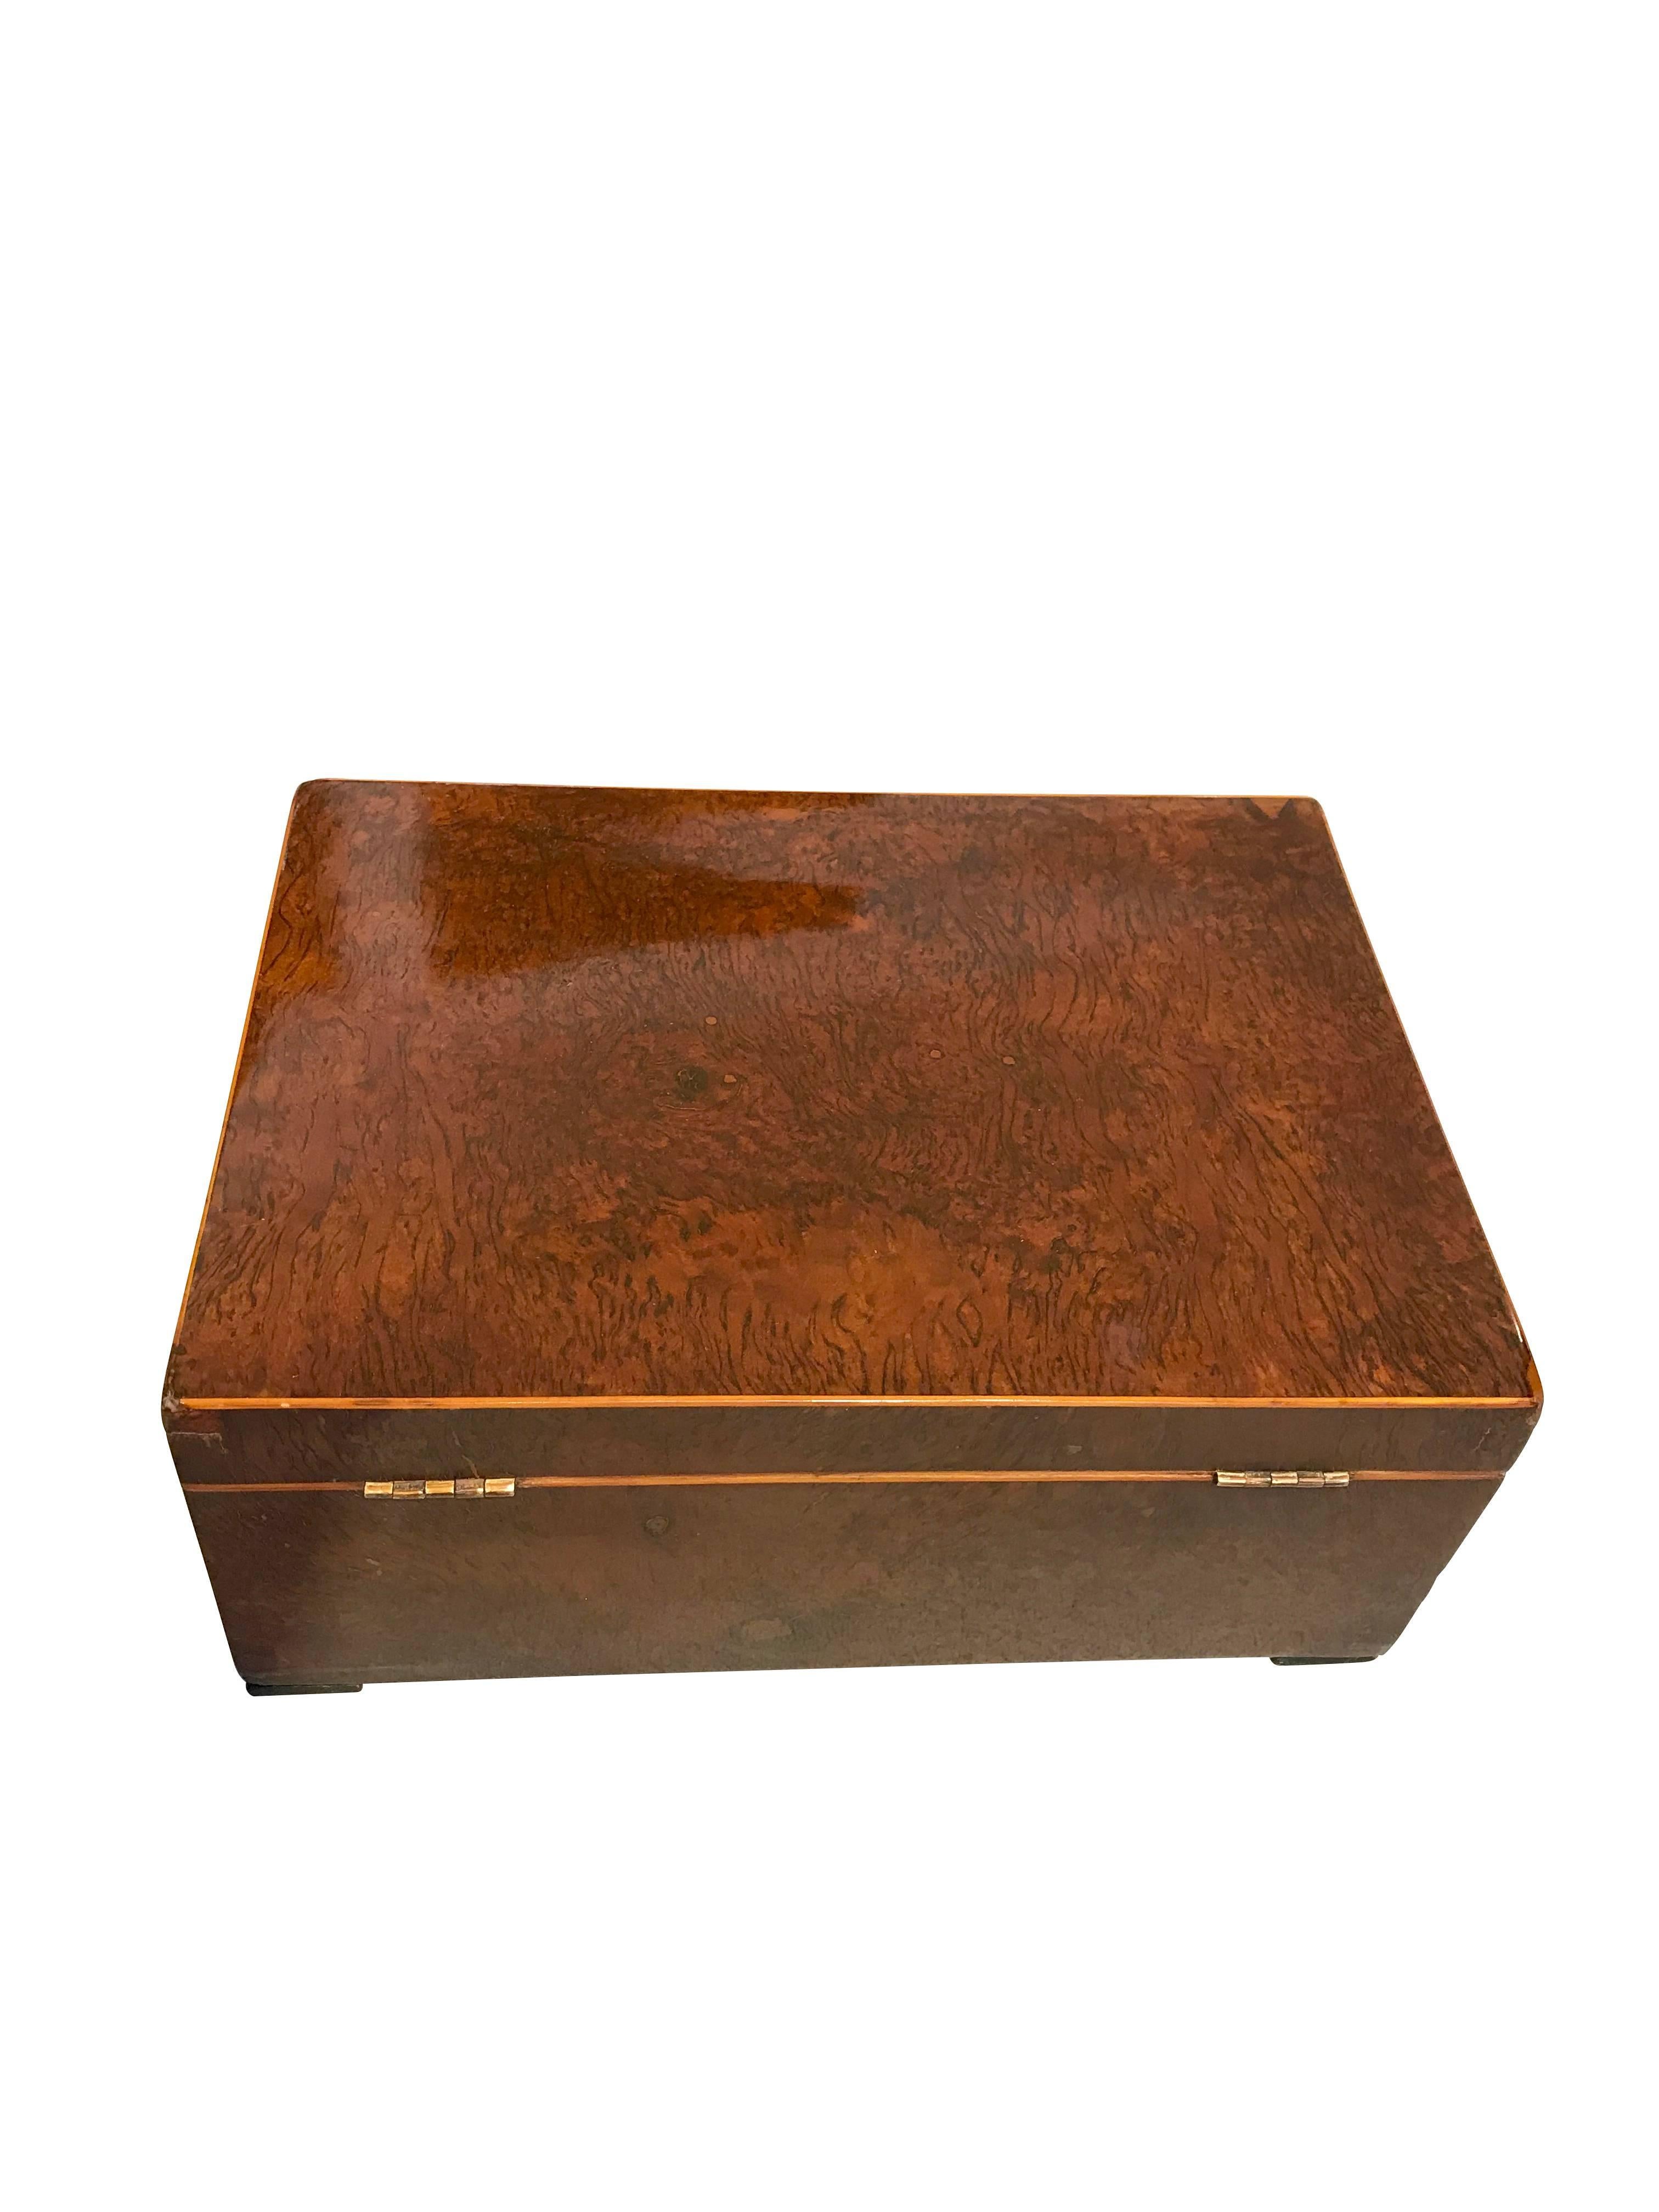 Veneer Biedermeier Casket Box, Walnut Root and Maple, South Germany circa 1820